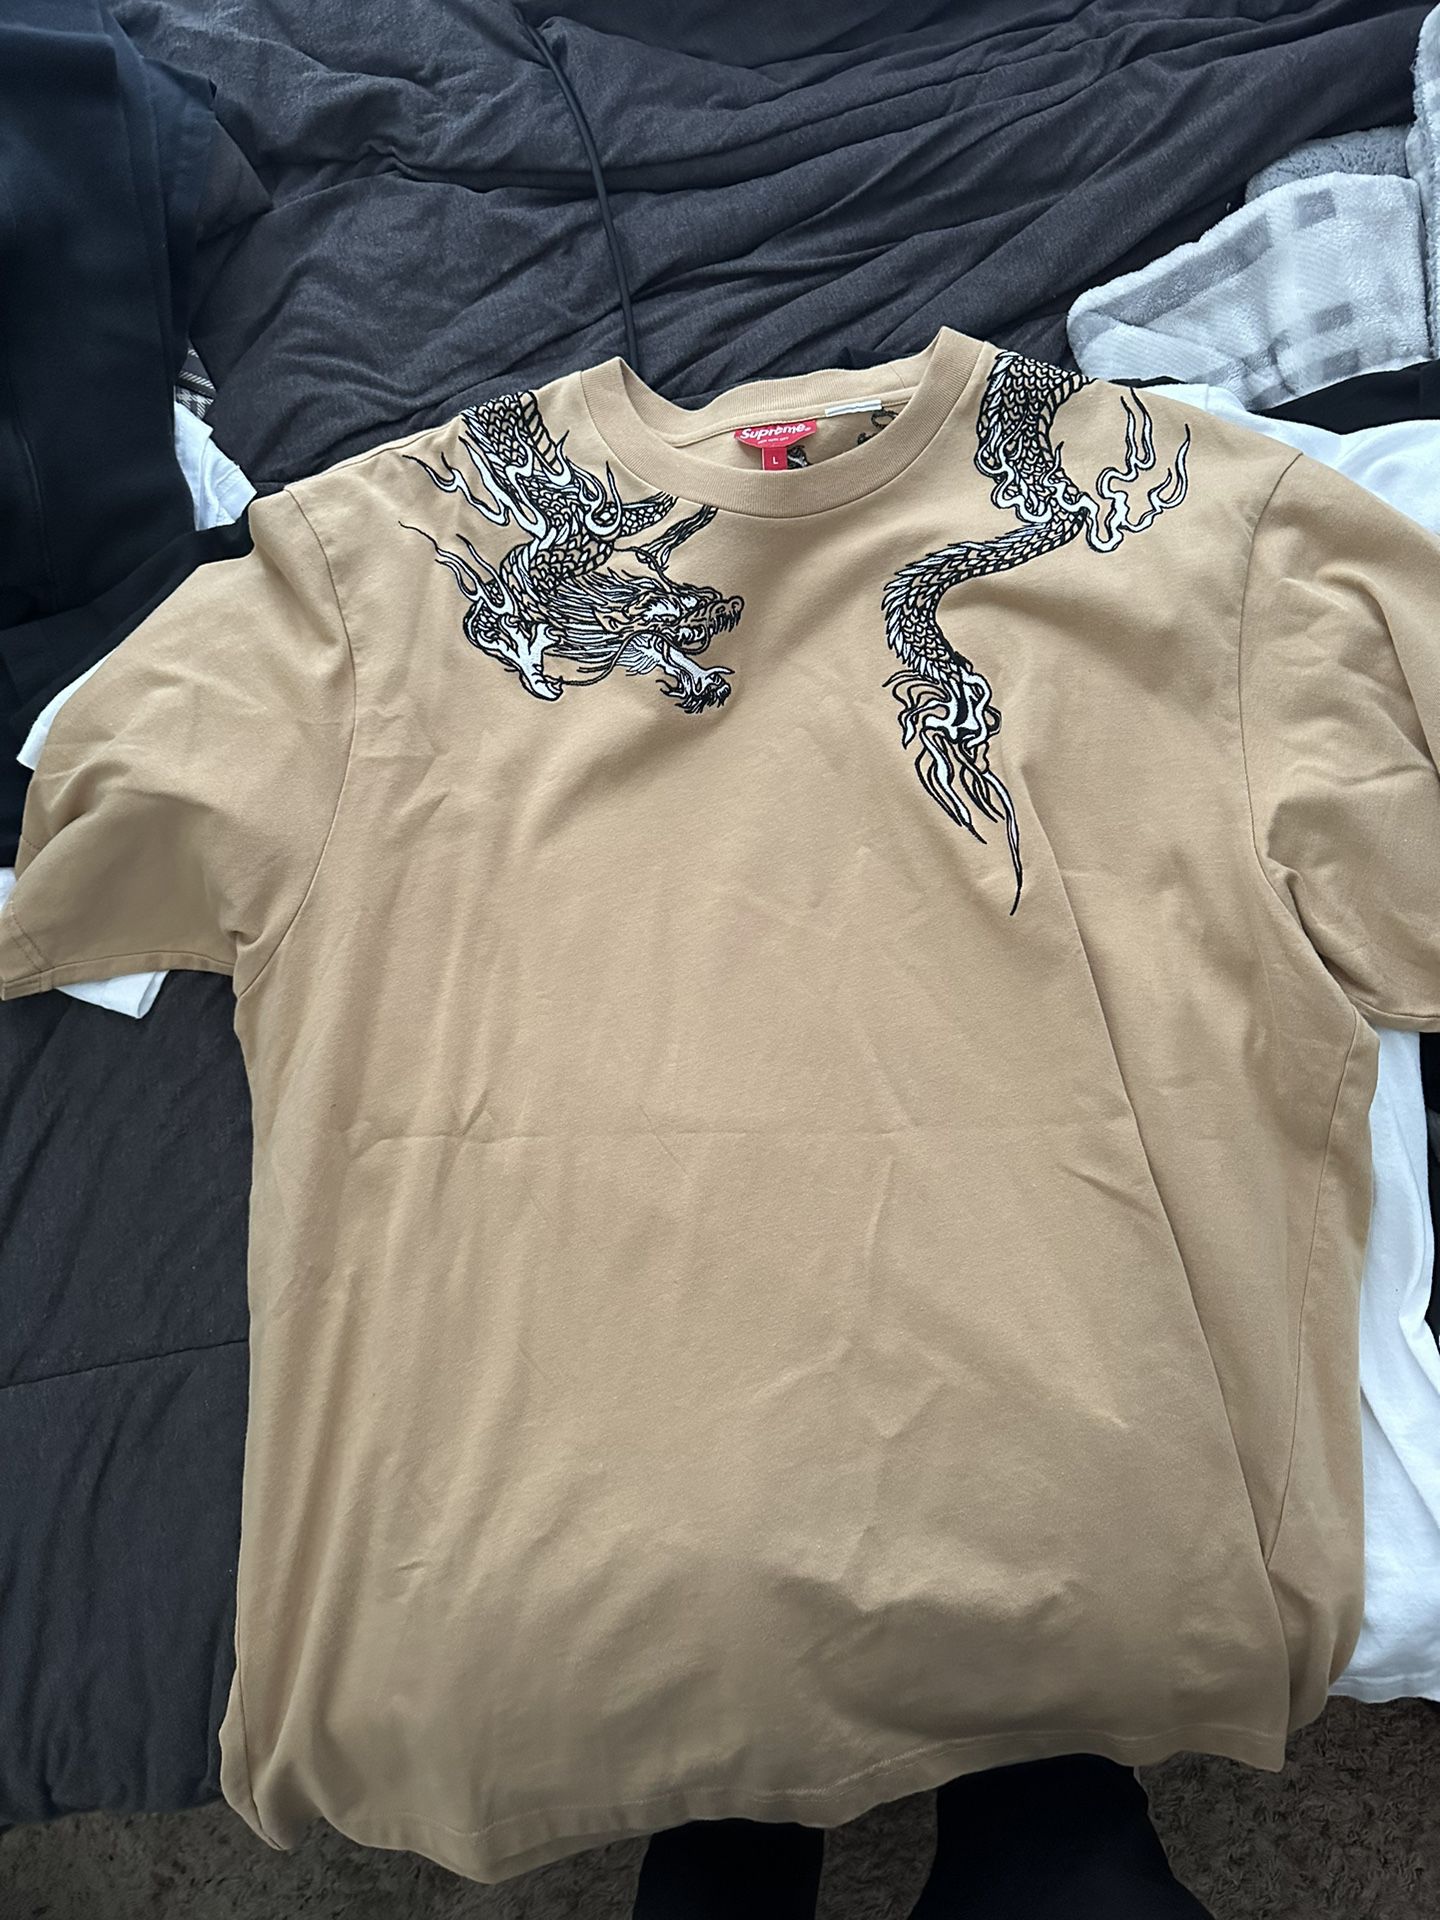 Supreme Dragon Shirt